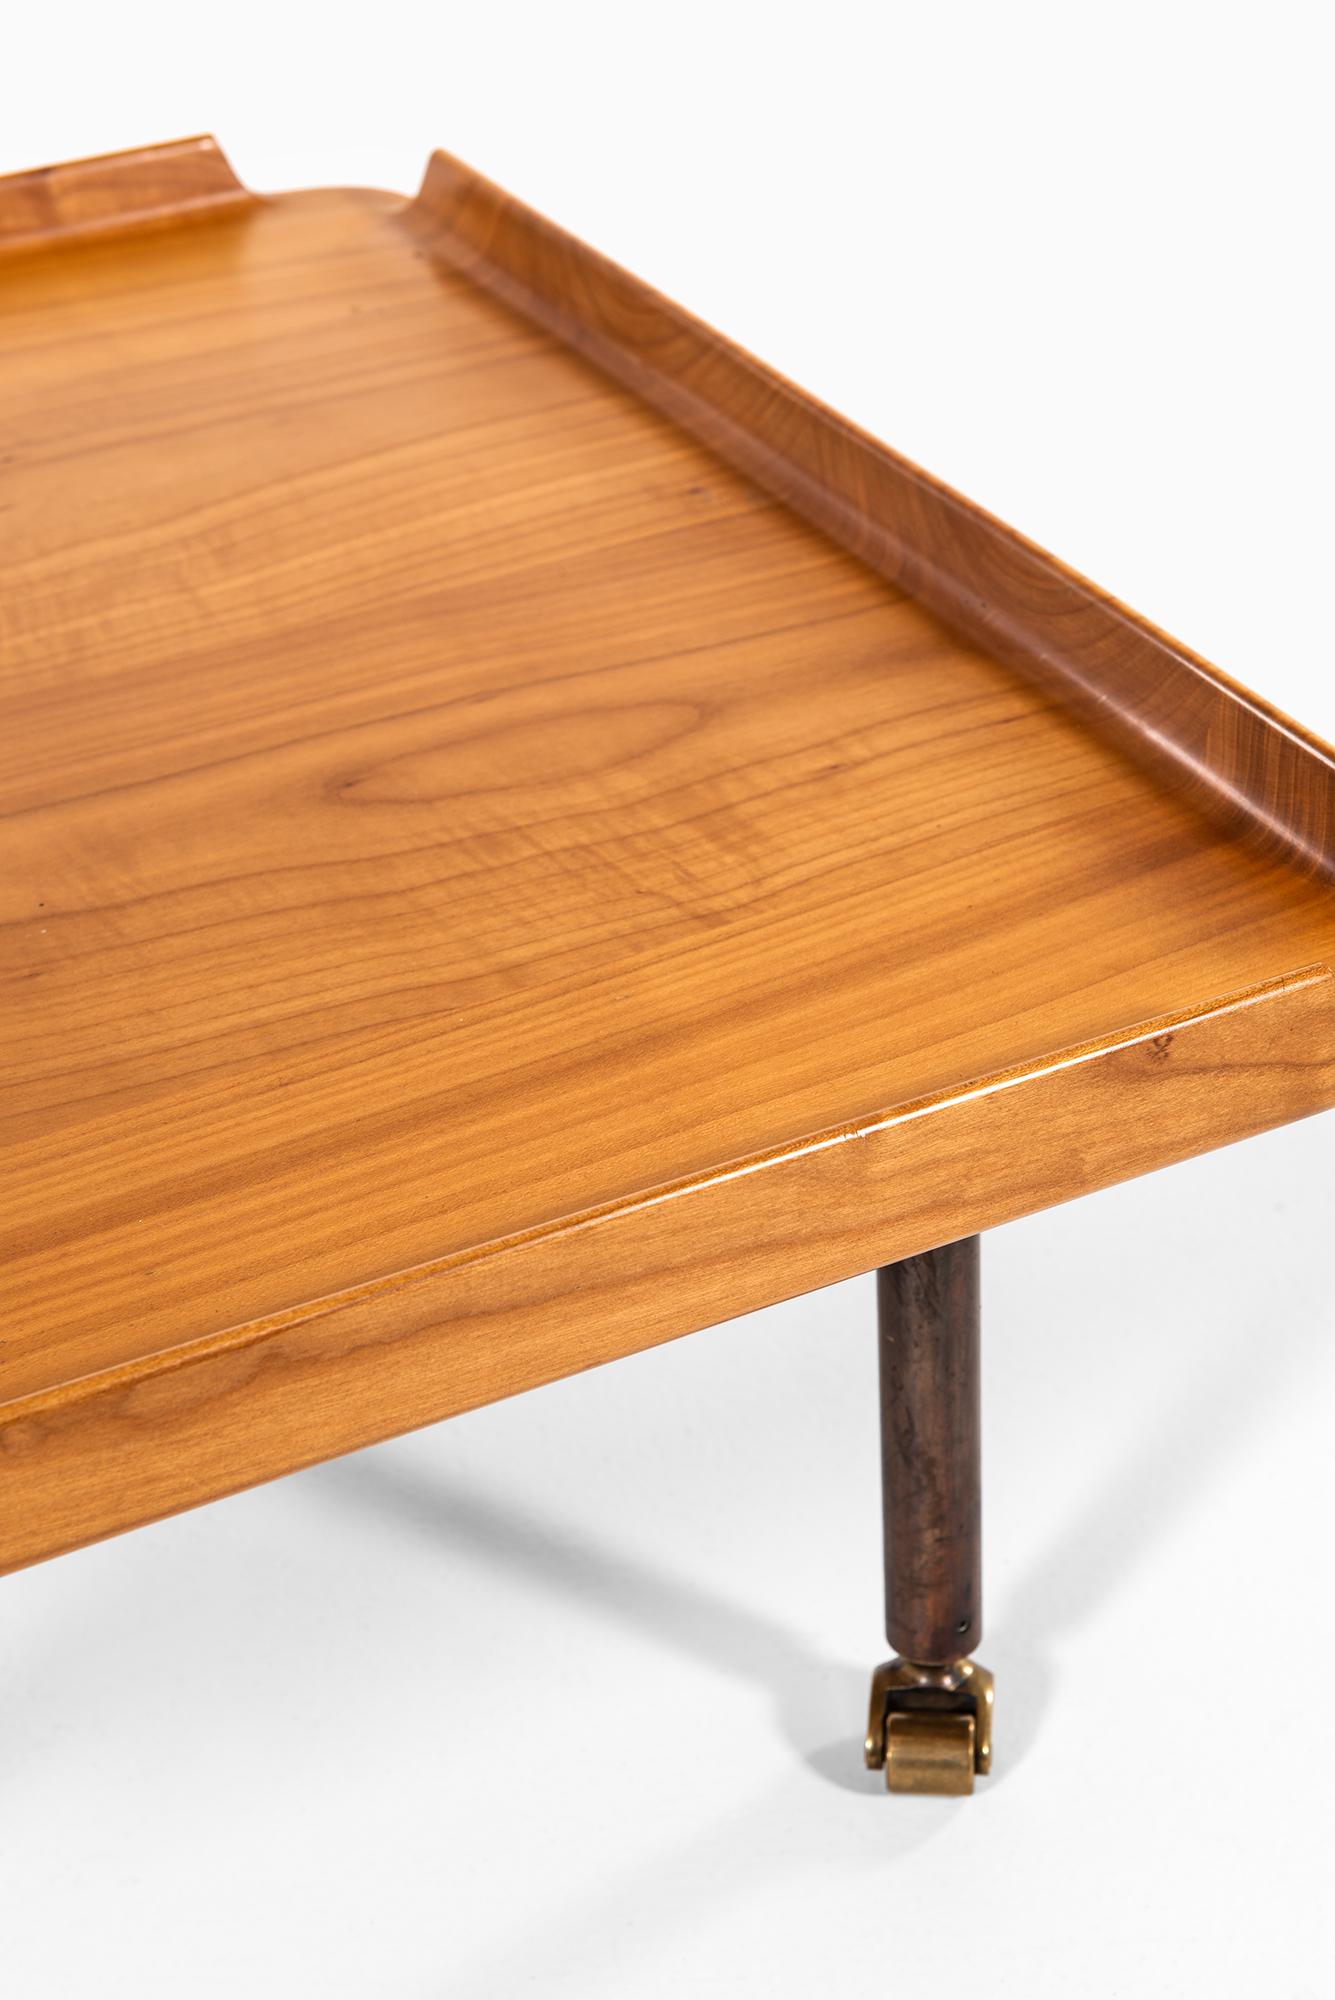 Sehr seltener niedriger Tisch, entworfen von Finn Juhl. Hergestellt von dem Tischler Niels Roth Andersen in Dänemark. Nur in 2 Exemplaren hergestellt.